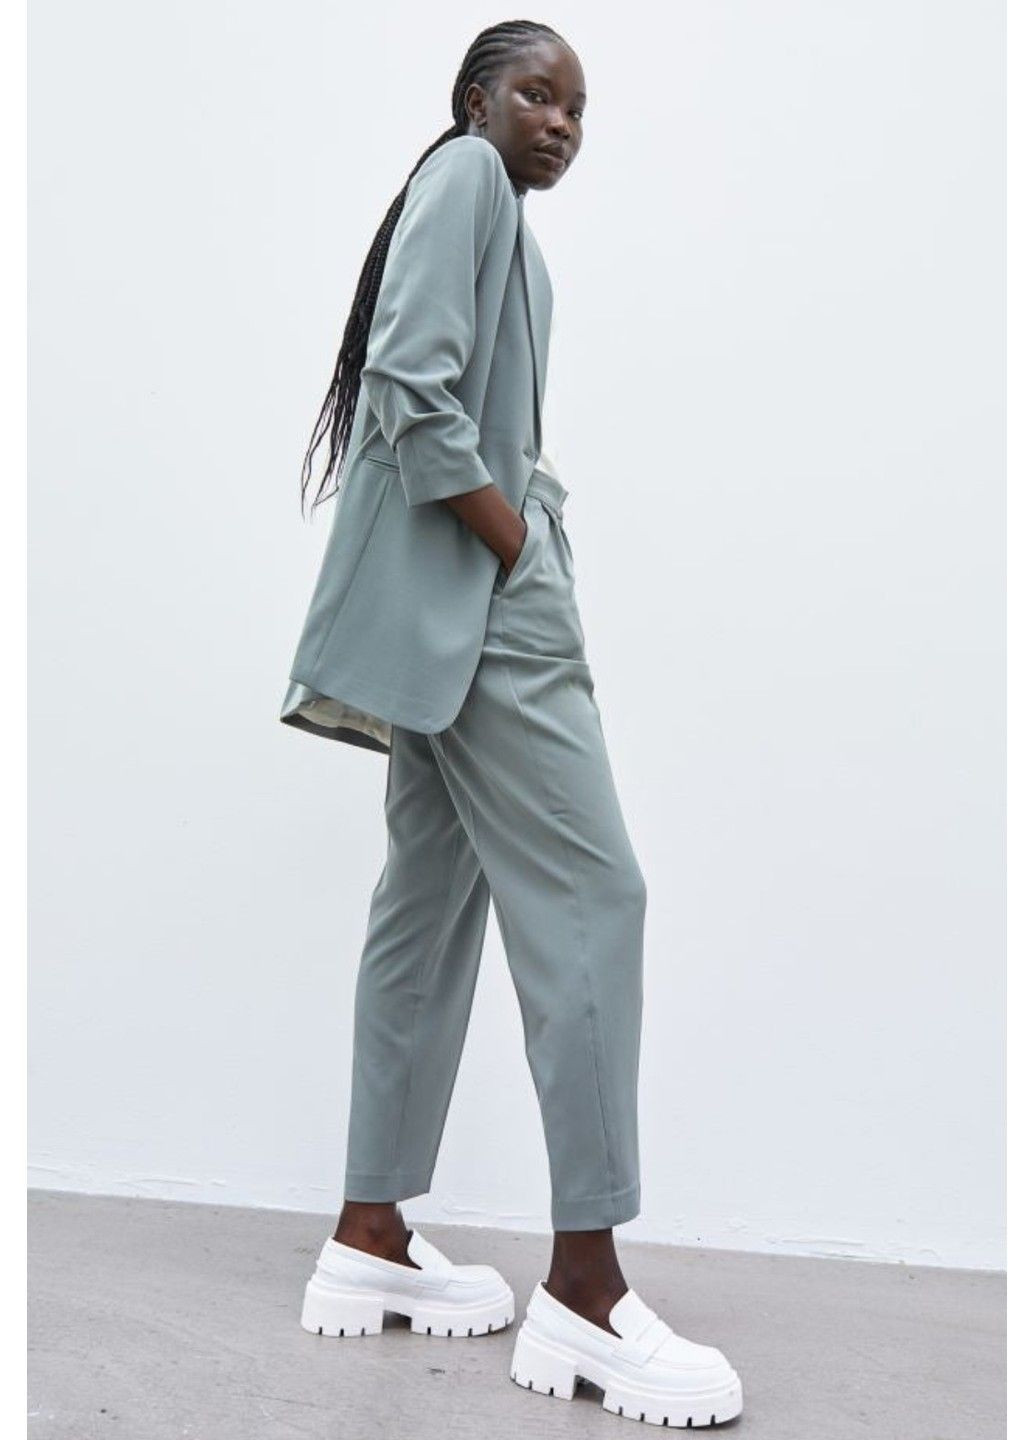 Хаки классические демисезонные брюки H&M